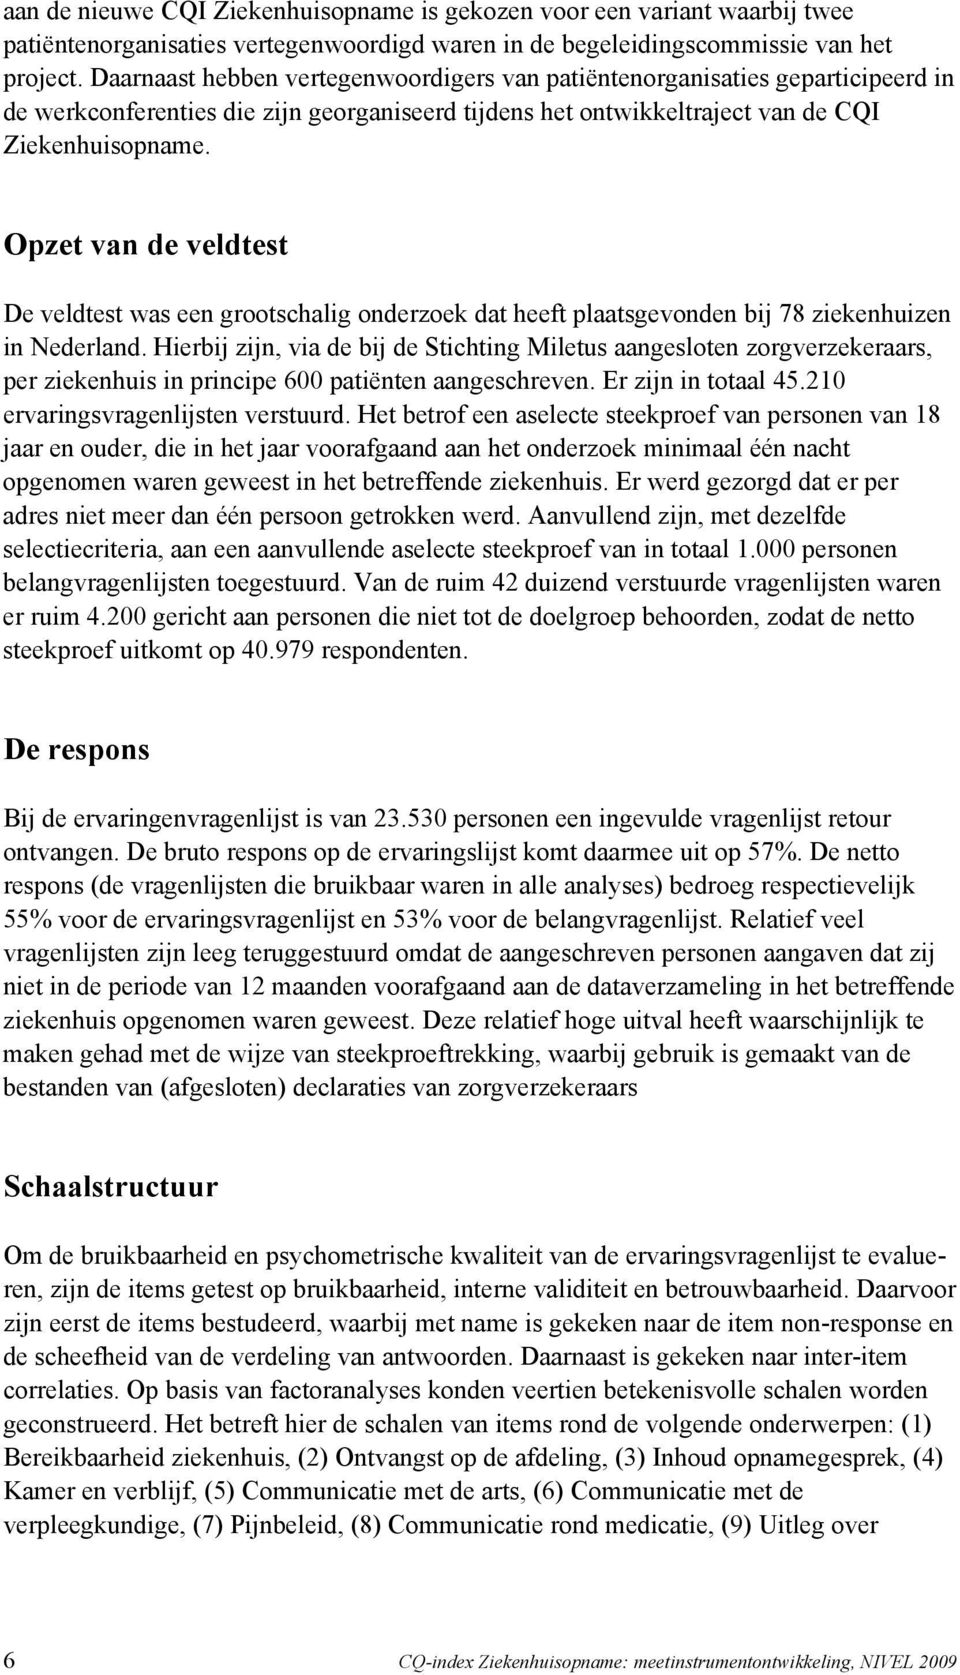 Opzet van de veldtest De veldtest was een grootschalig onderzoek dat heeft plaatsgevonden bij 78 ziekenhuizen in Nederland.